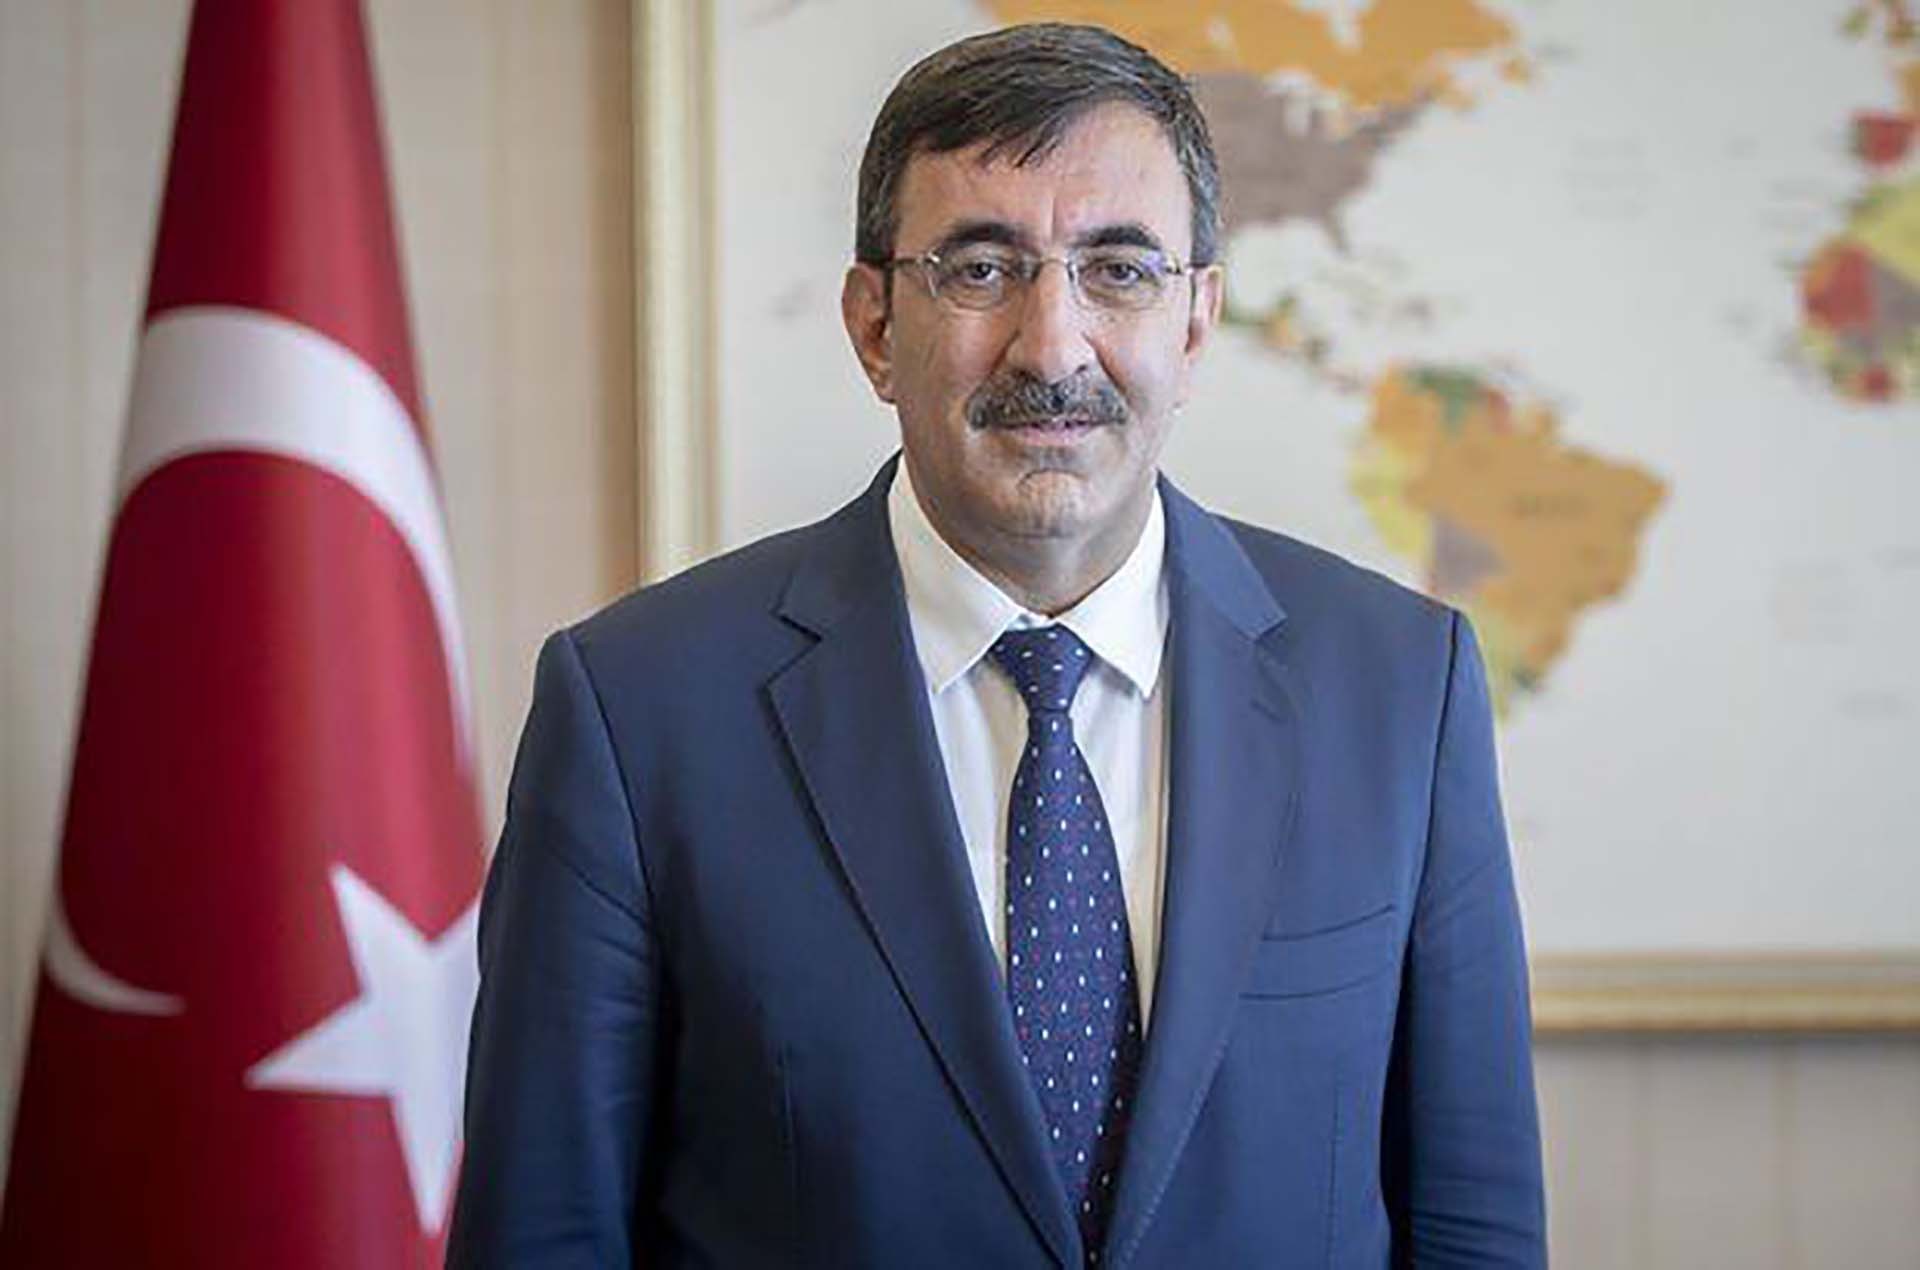 Phó Tổng thống nước Cộng hòa Thổ Nhĩ Kỳ Cevdet Yilmaz. (Nguồn: trend.az)